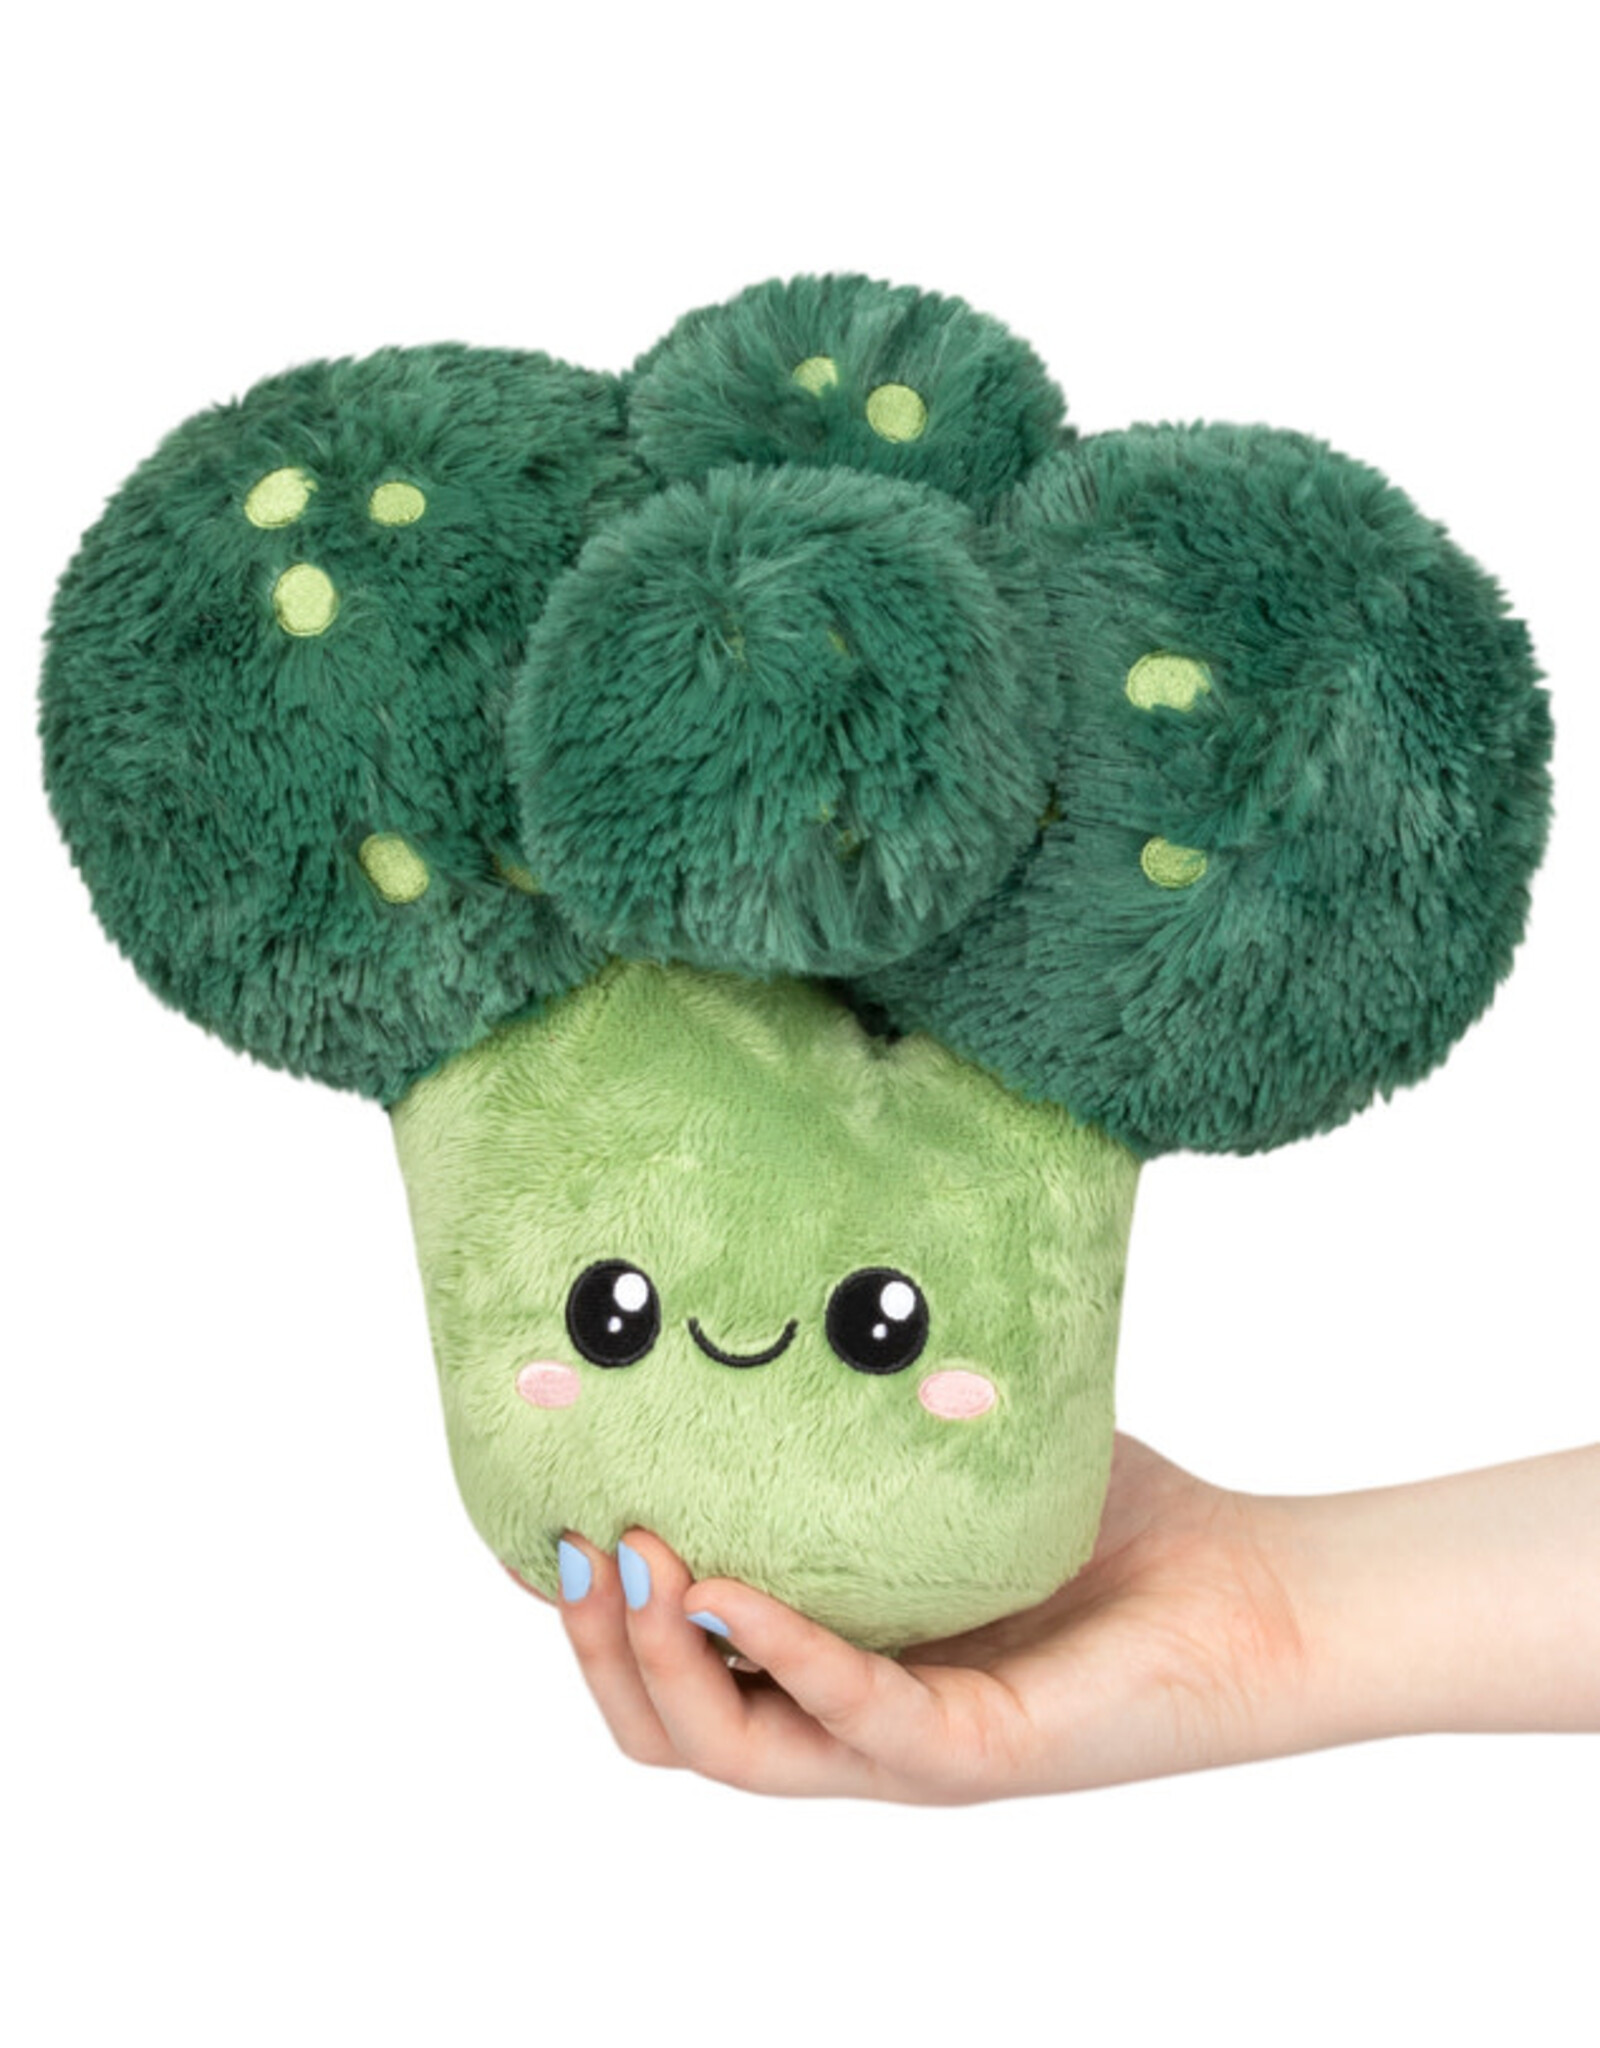 Squishable Squishable Mini Comfort Food Broccoli